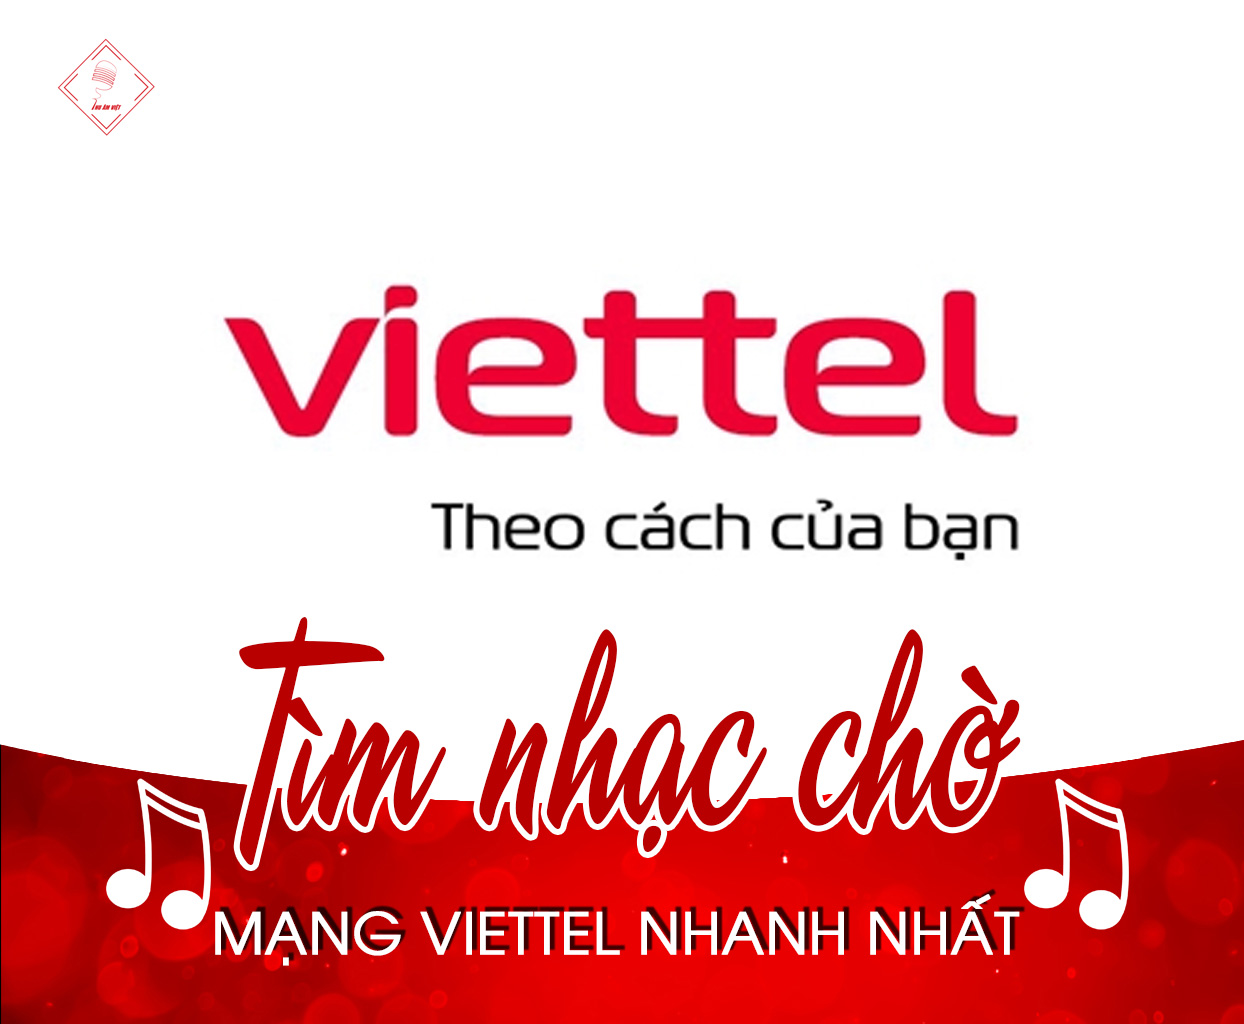 Hướng dẫn tìm mã số bài hát nhạc chờ mạng Viettel nhanh nhất 2021